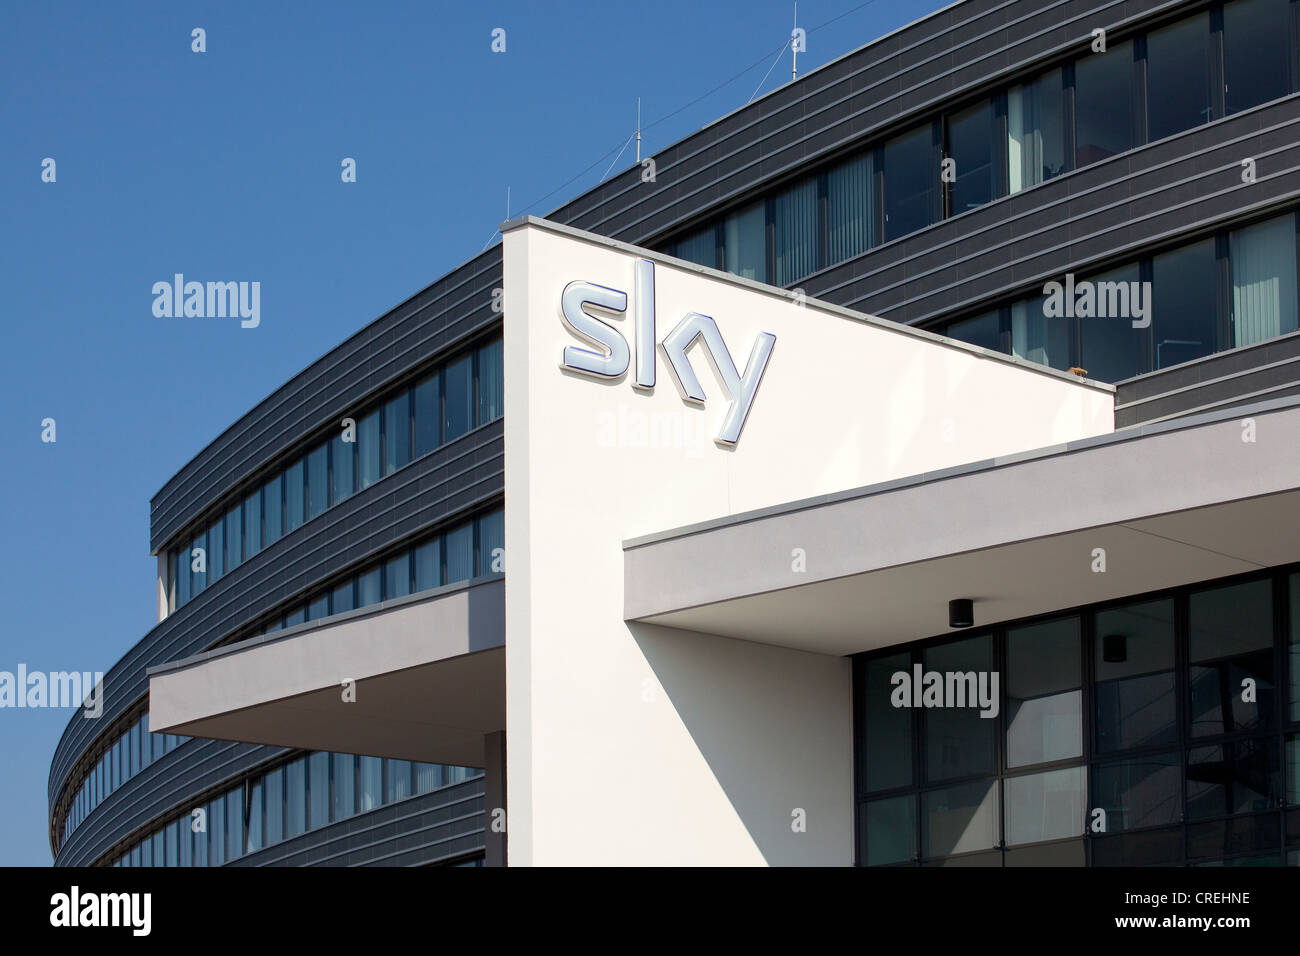 Logo au siège social de la chaîne de télévision à péage Sky Deutschland AG Unterfoehring situé près de Munich, Bavaria, Germany, Europe Banque D'Images